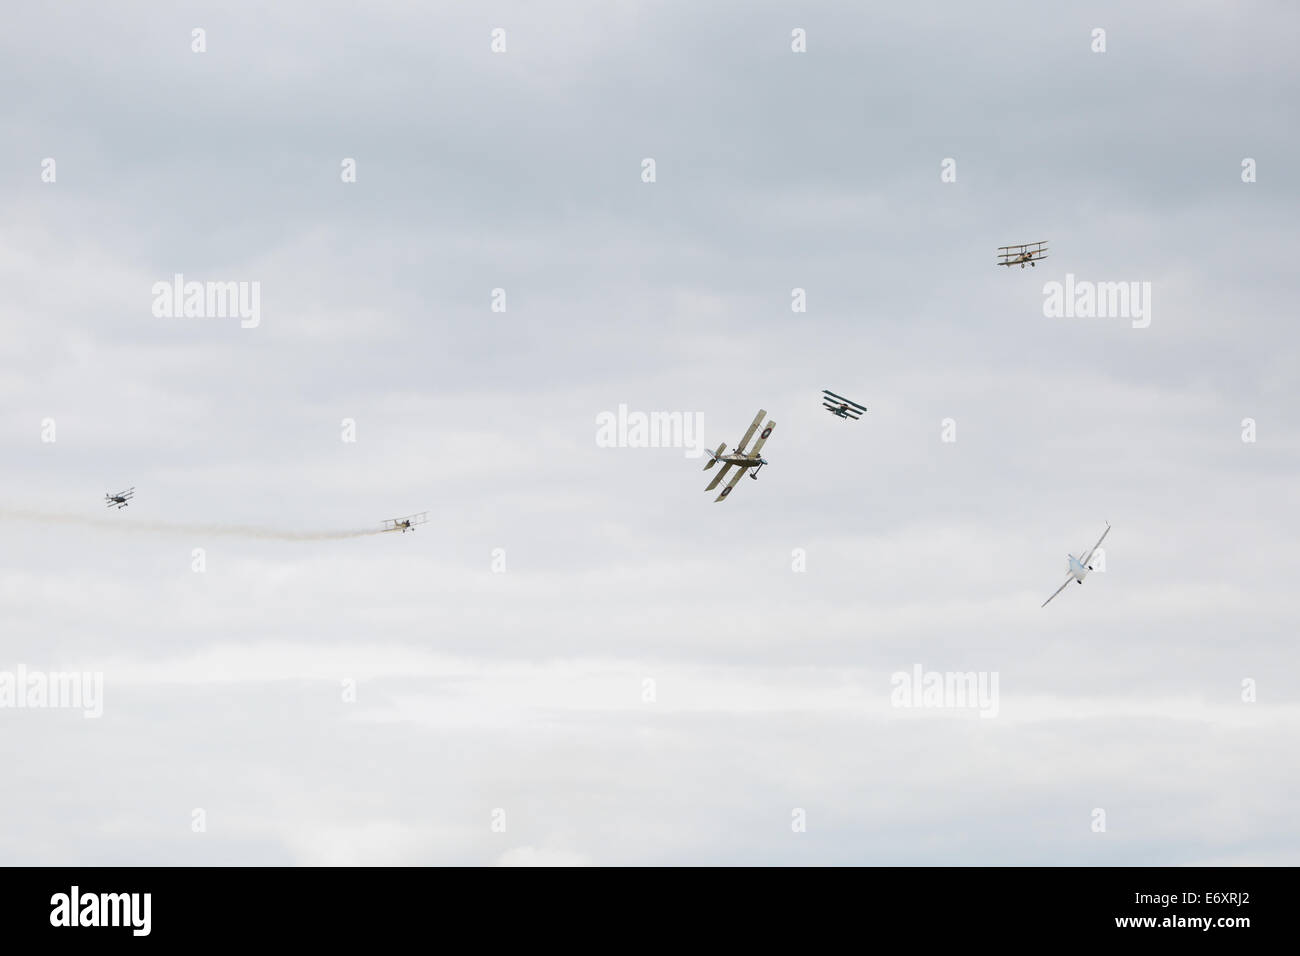 C'est une simulation de combat de chiens avec la Grande Guerre de l'équipe d'affichage à Shoreham Airshow 2014, l'aéroport de Shoreham, East Sussex, 2014 Banque D'Images